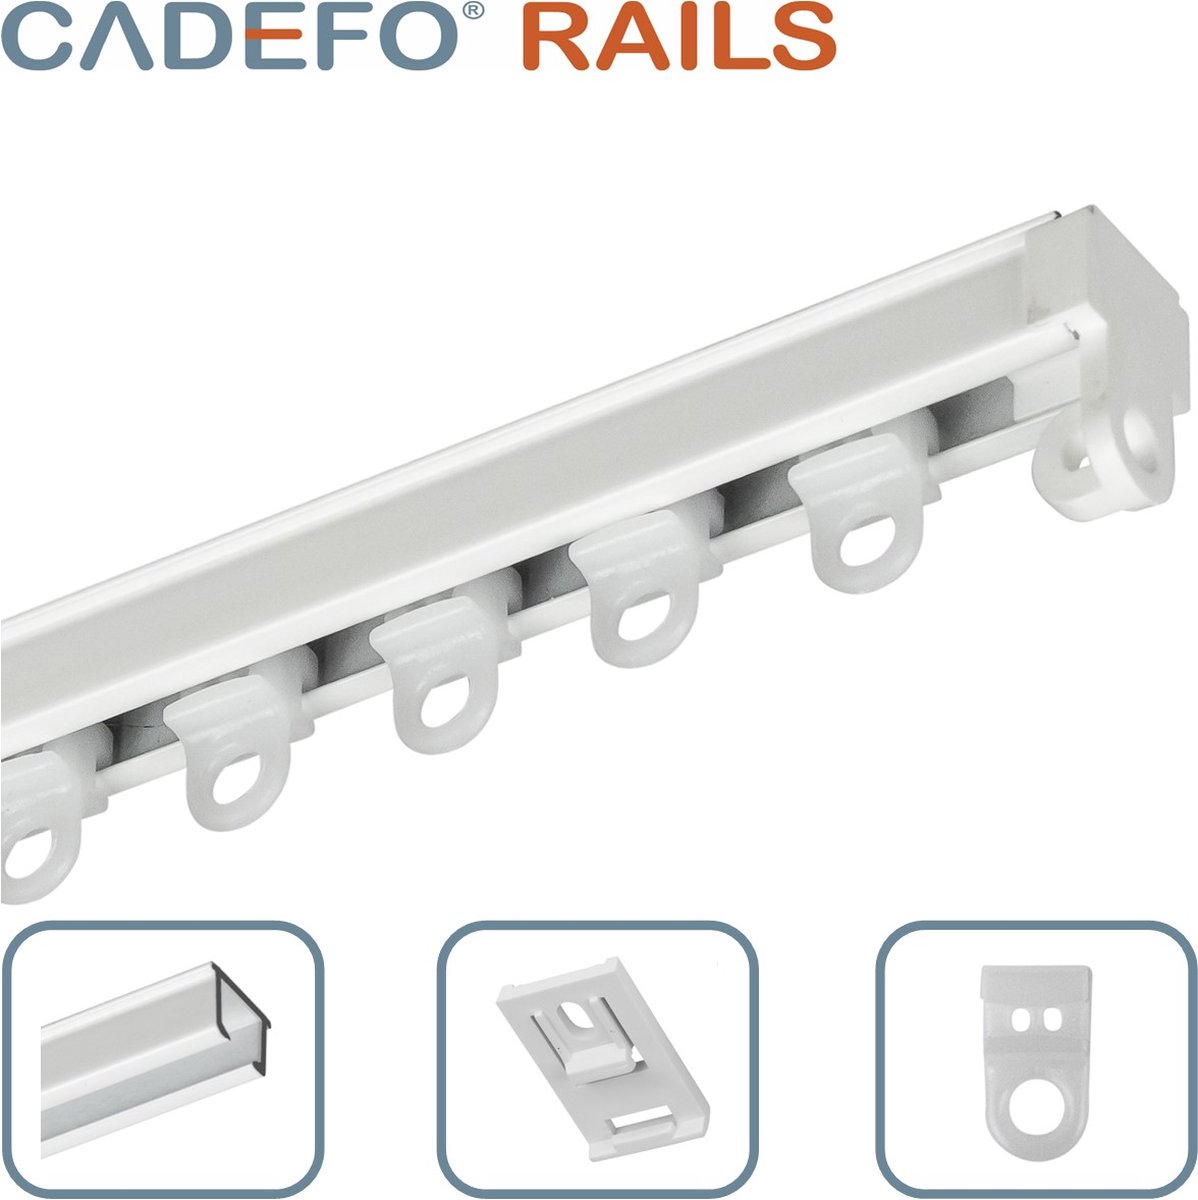 CADEFO RAILS (151 - 200 cm) Gordijnrails - Compleet op maat! - UIT 1 STUK - Leverbaar tot 6 meter - Plafondbevestiging - Lengte 195 cm